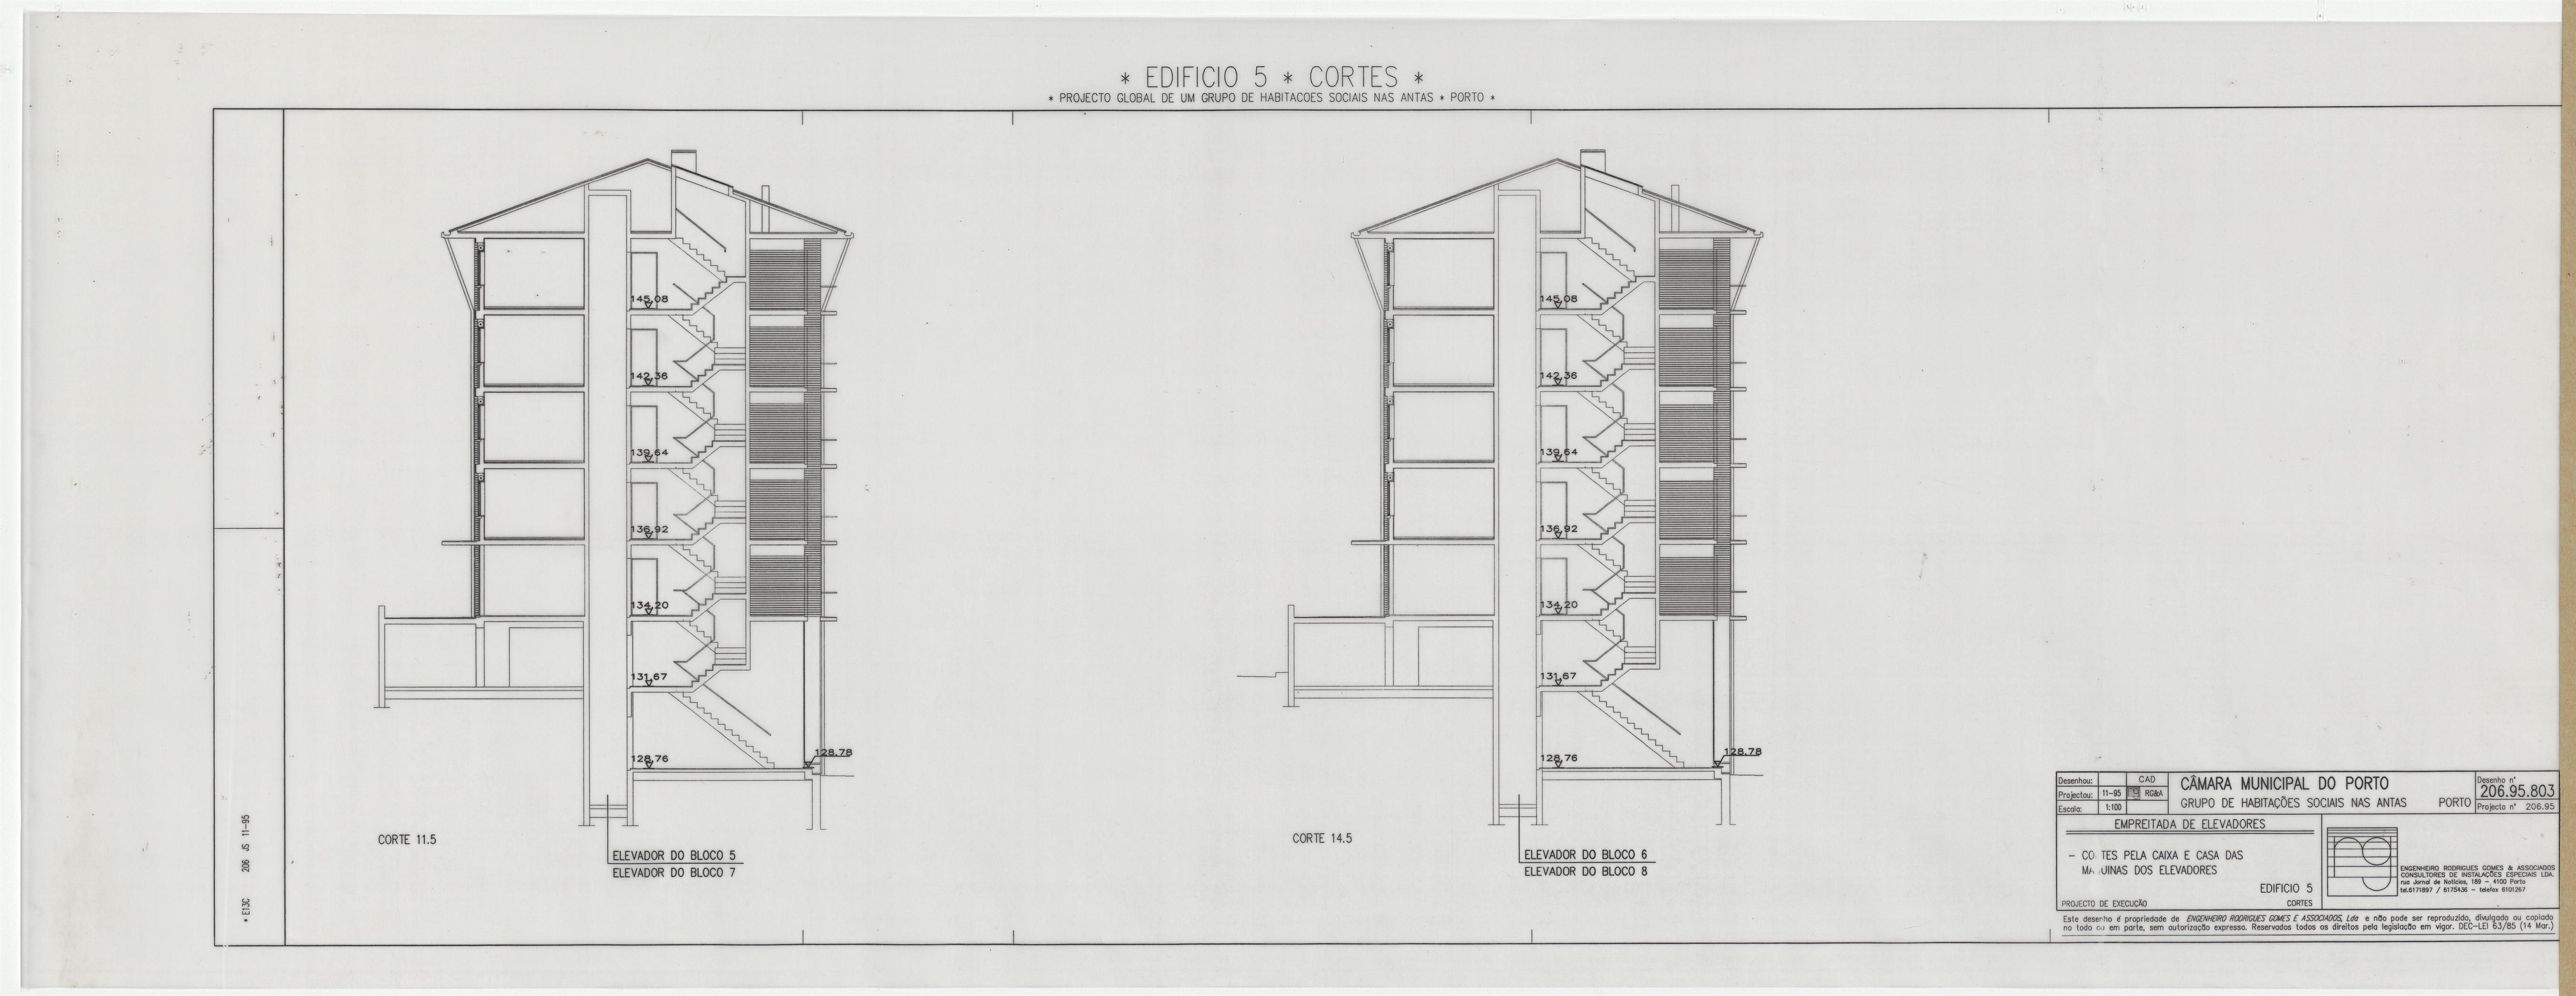 Grupo de habitações sociais nas Antas I e II : sistema de transporte de pessoas e cargas : elevadores : edifício 5